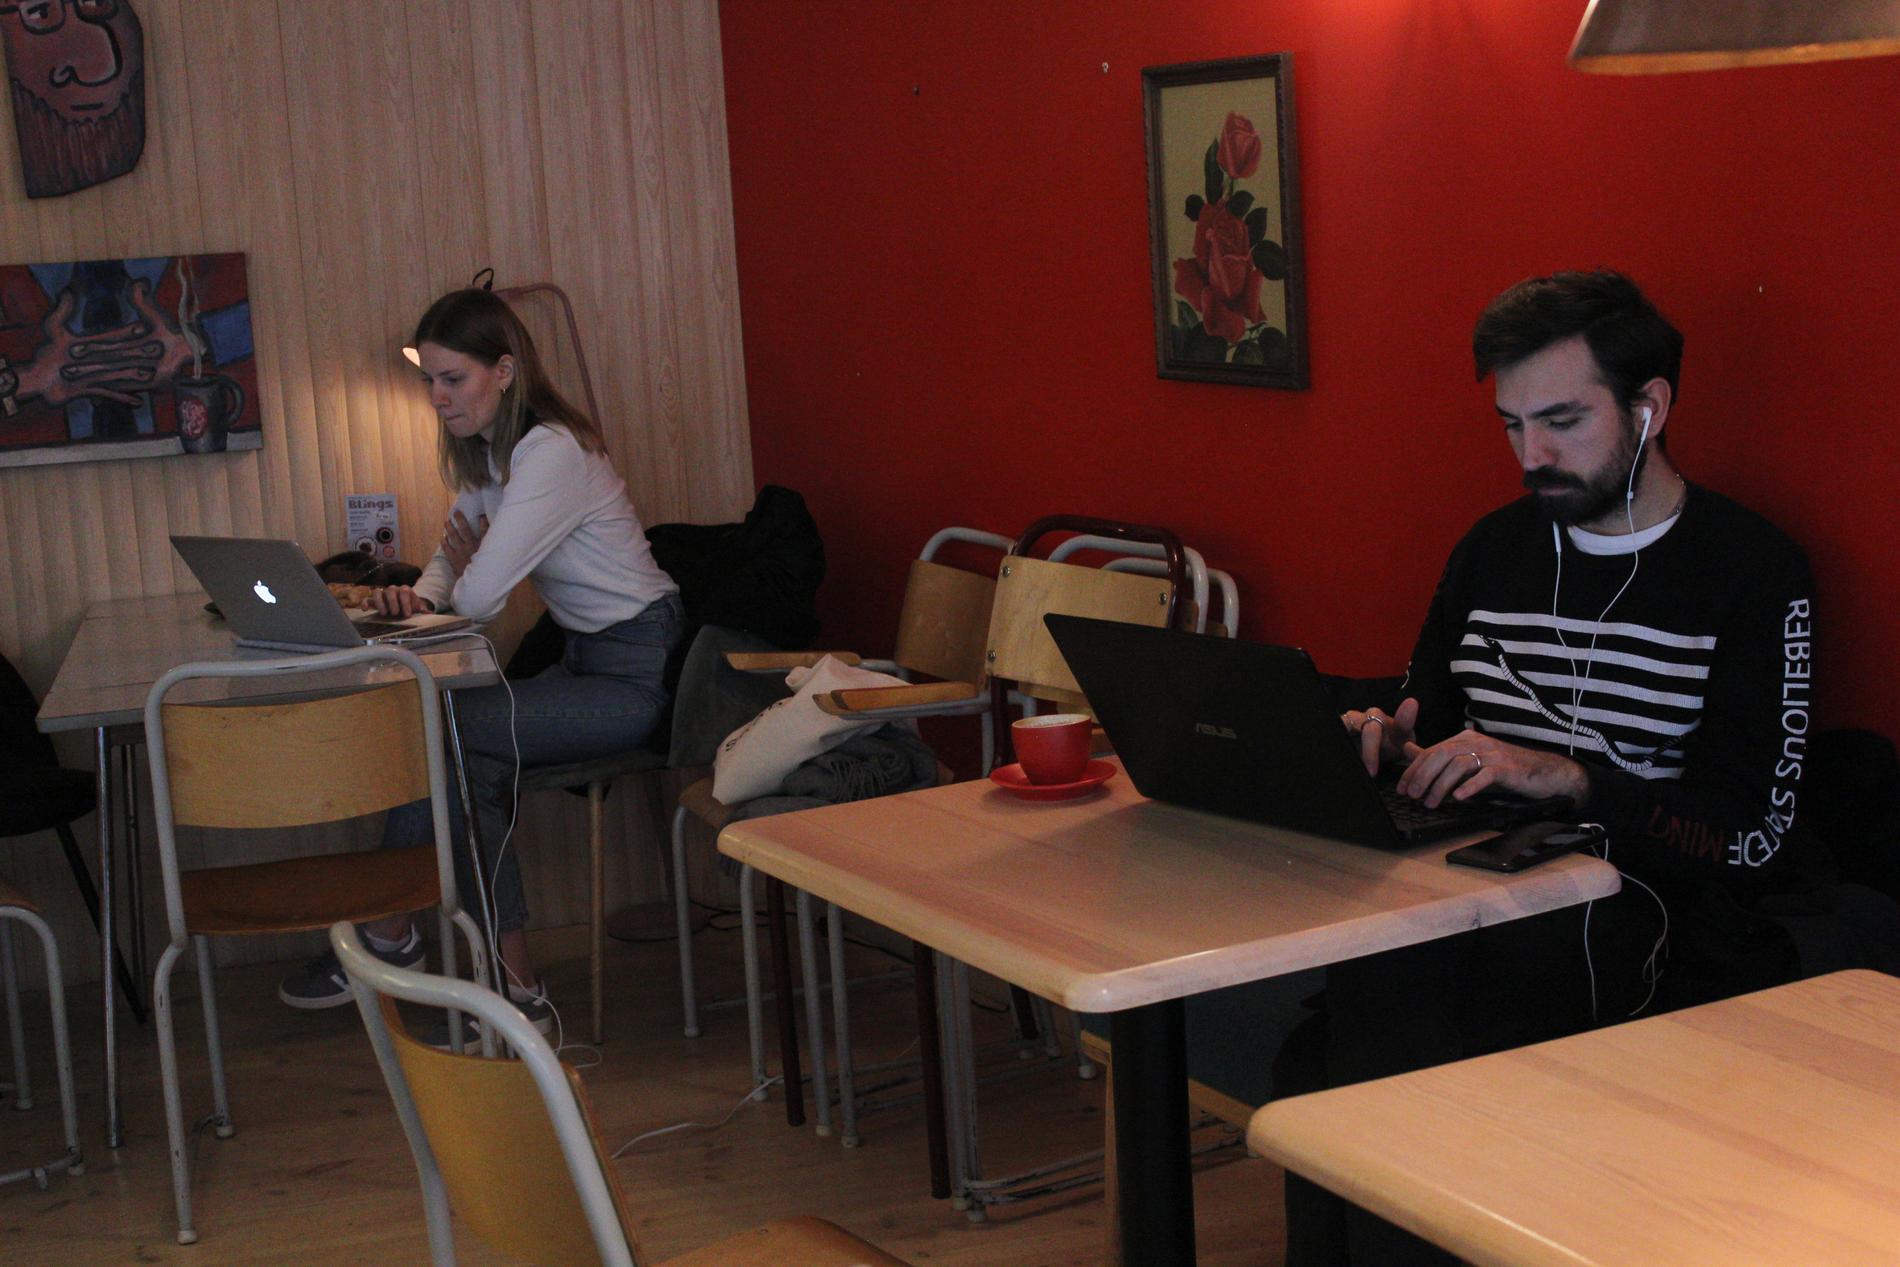 Flere studenter benytter seg av Coffeeberry som arbeidsplass.